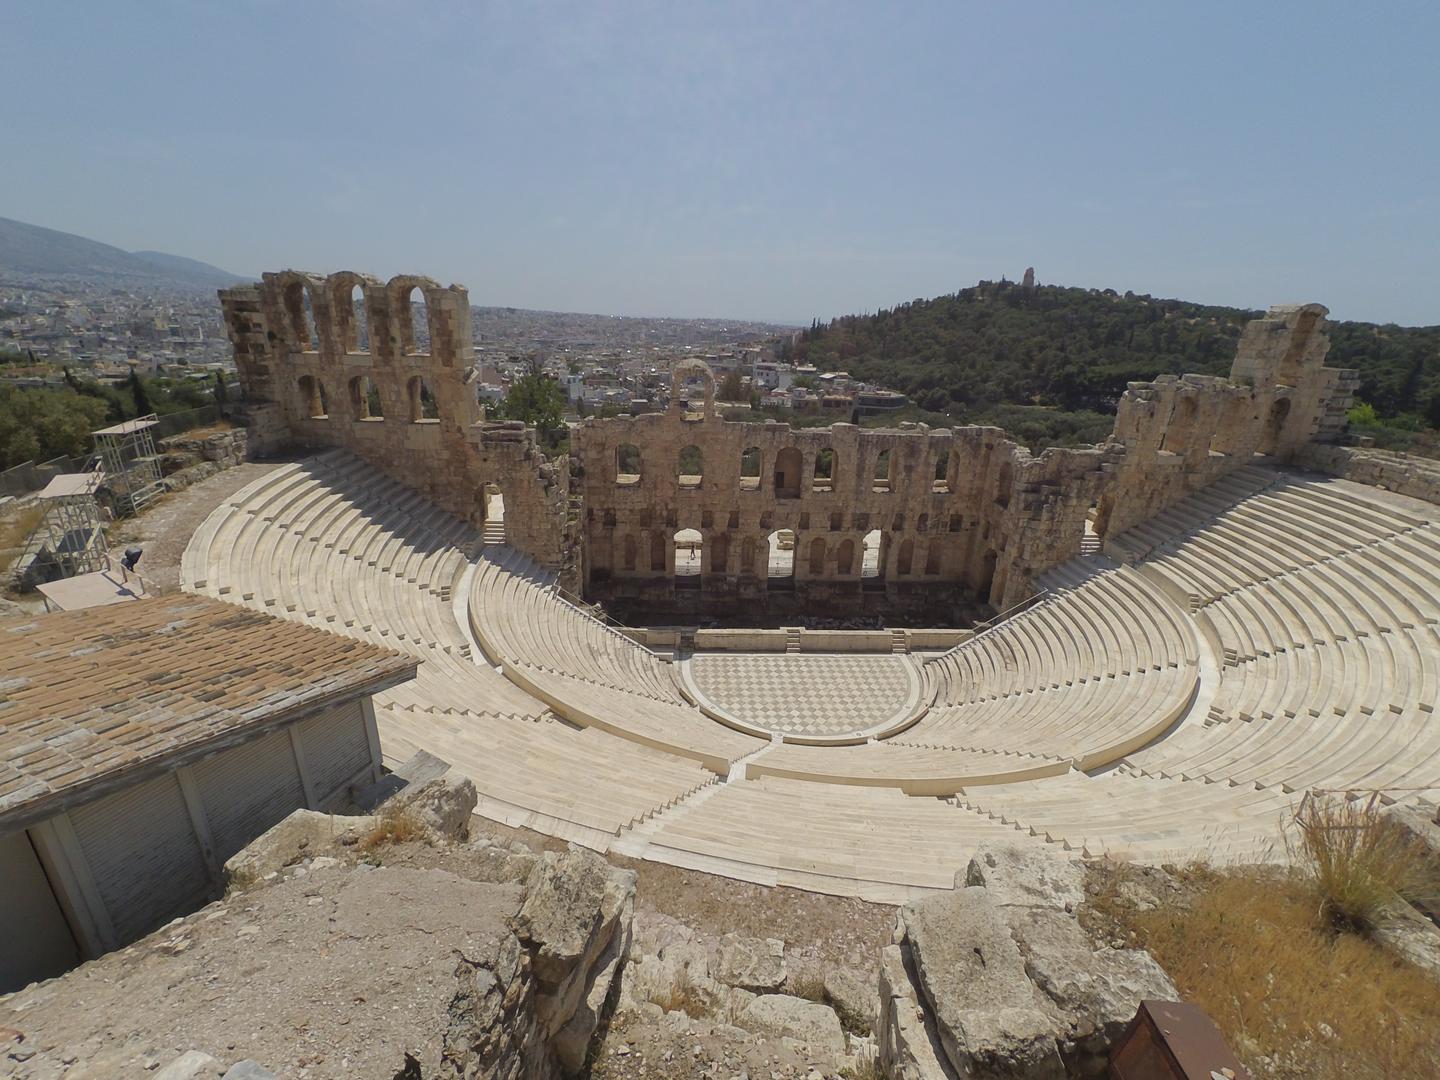 Laganom šetnjom od Partenona možete obići sve važnije lokalitete uključujući prvi stadion za Olimpijske igre